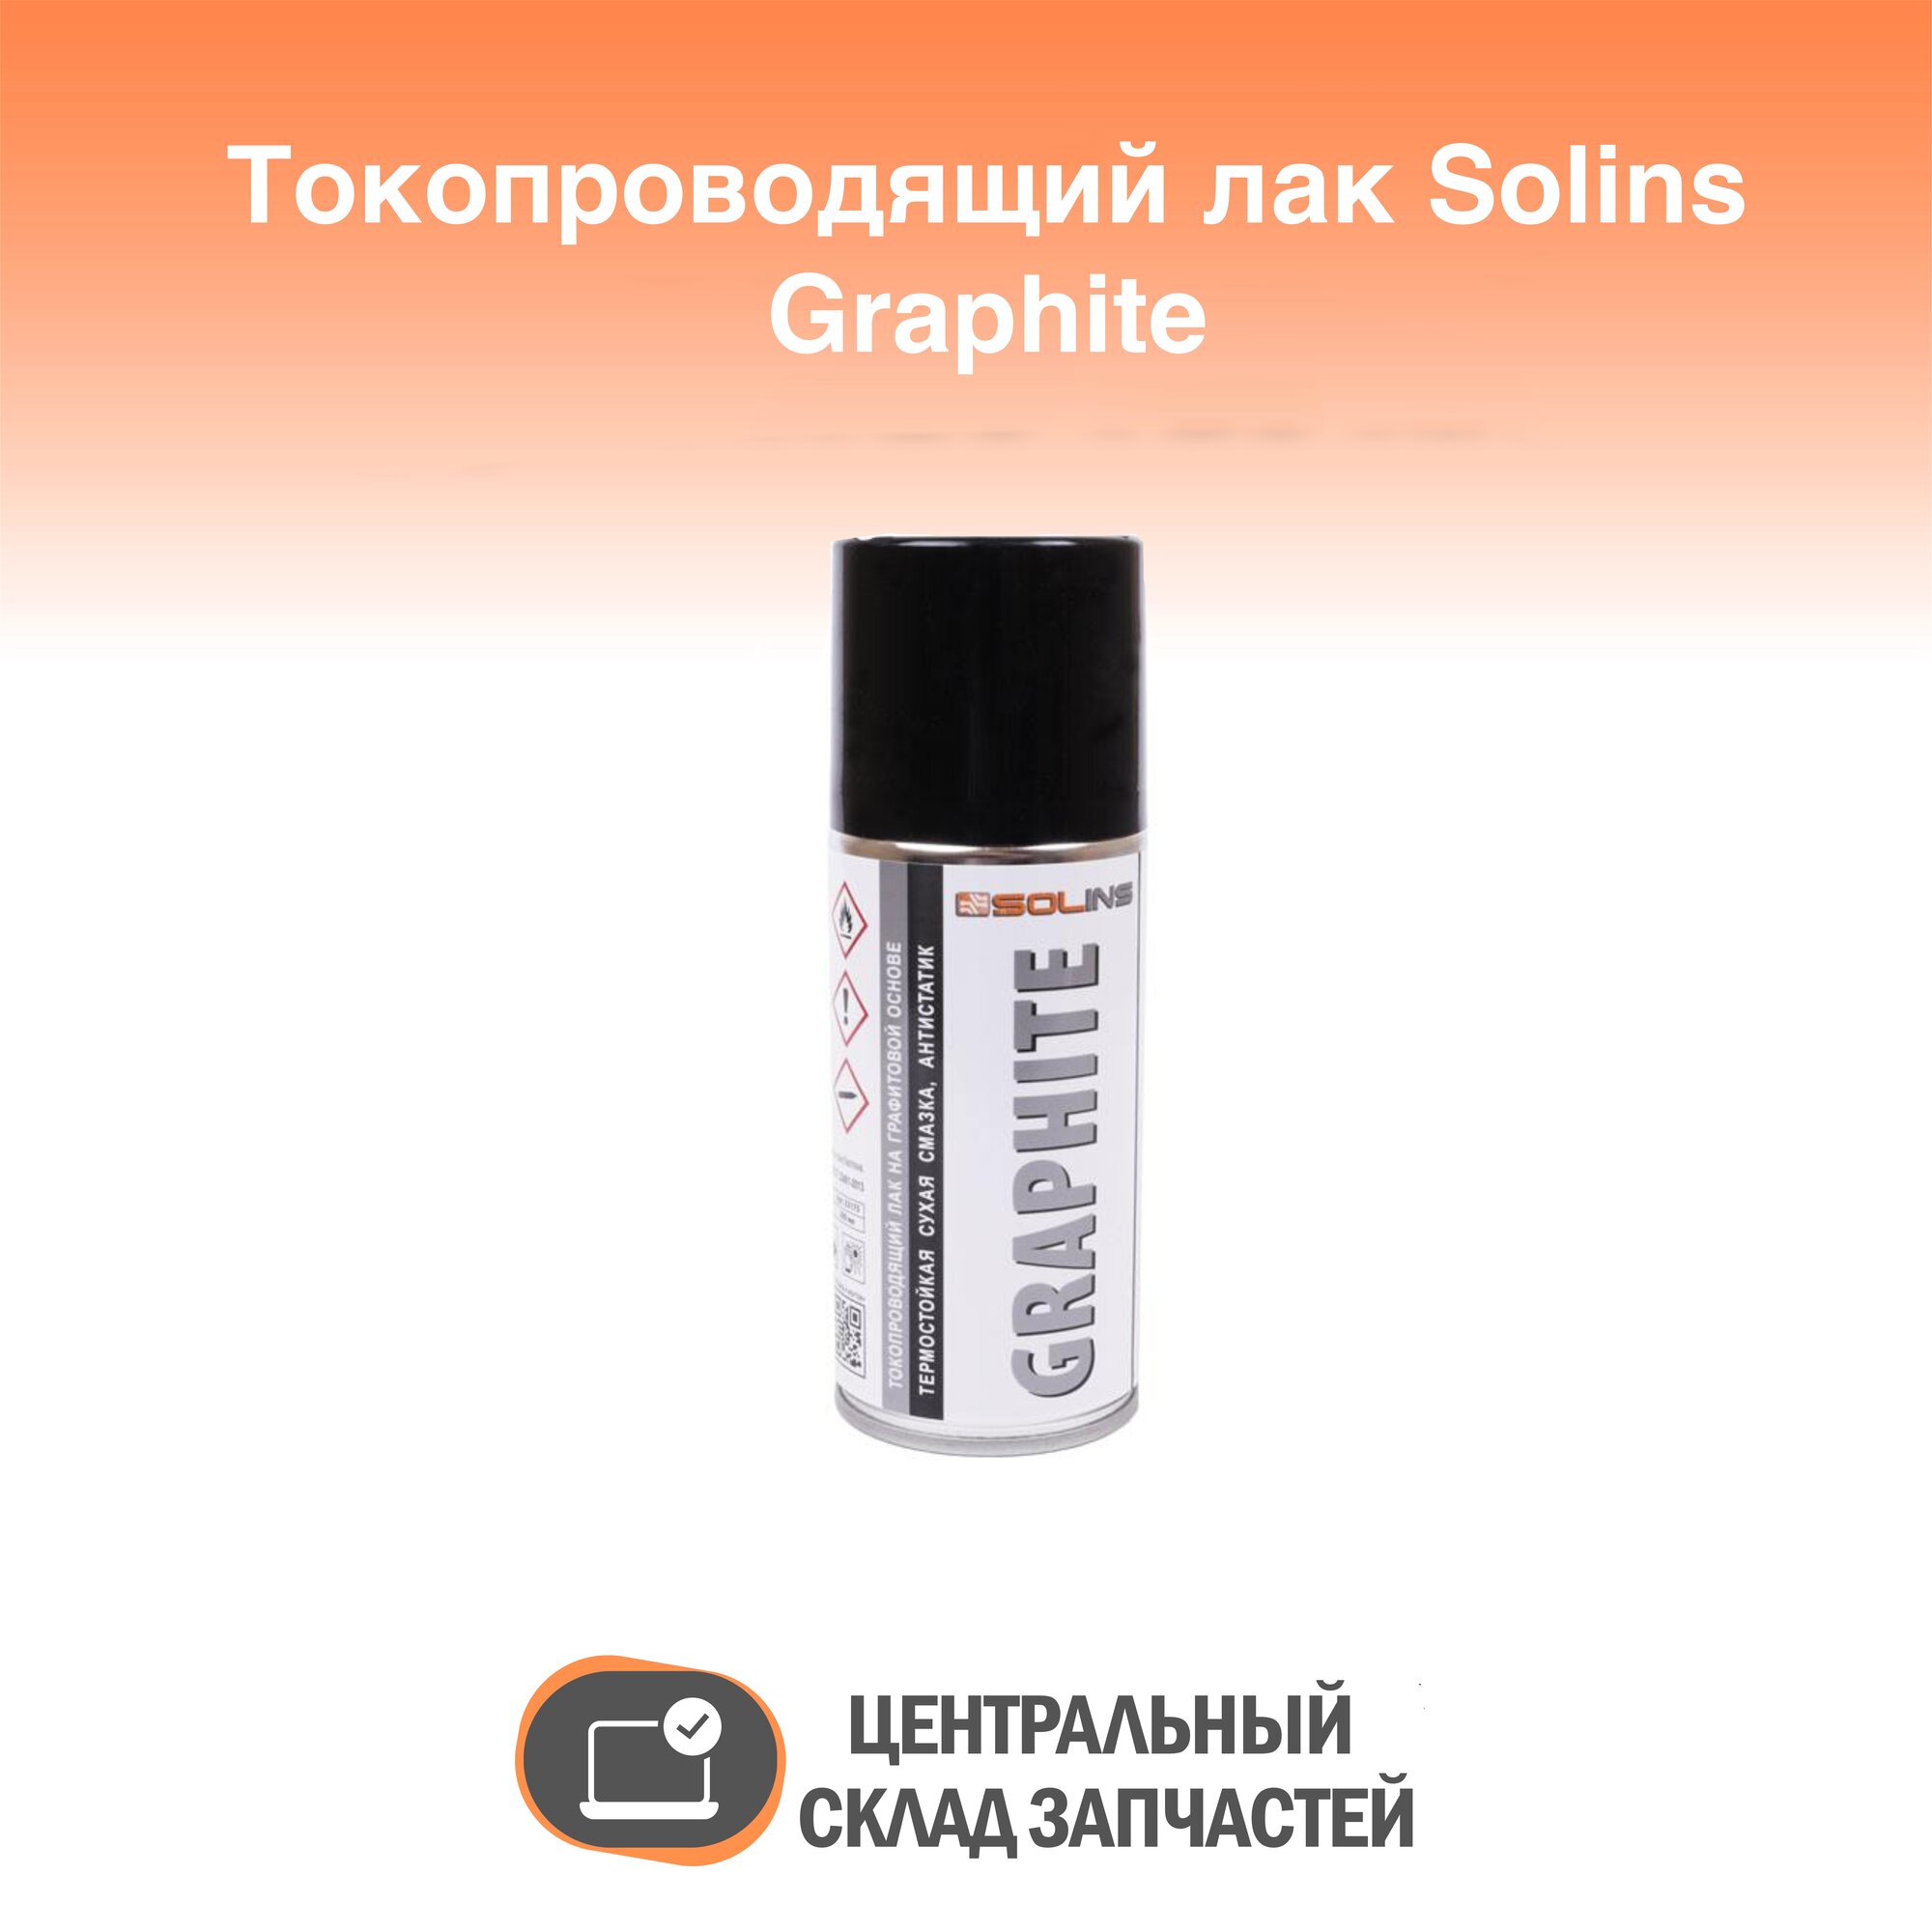 Graphite Токопроводящий лак на графитовой основе Graphite Solins объем 200 мл